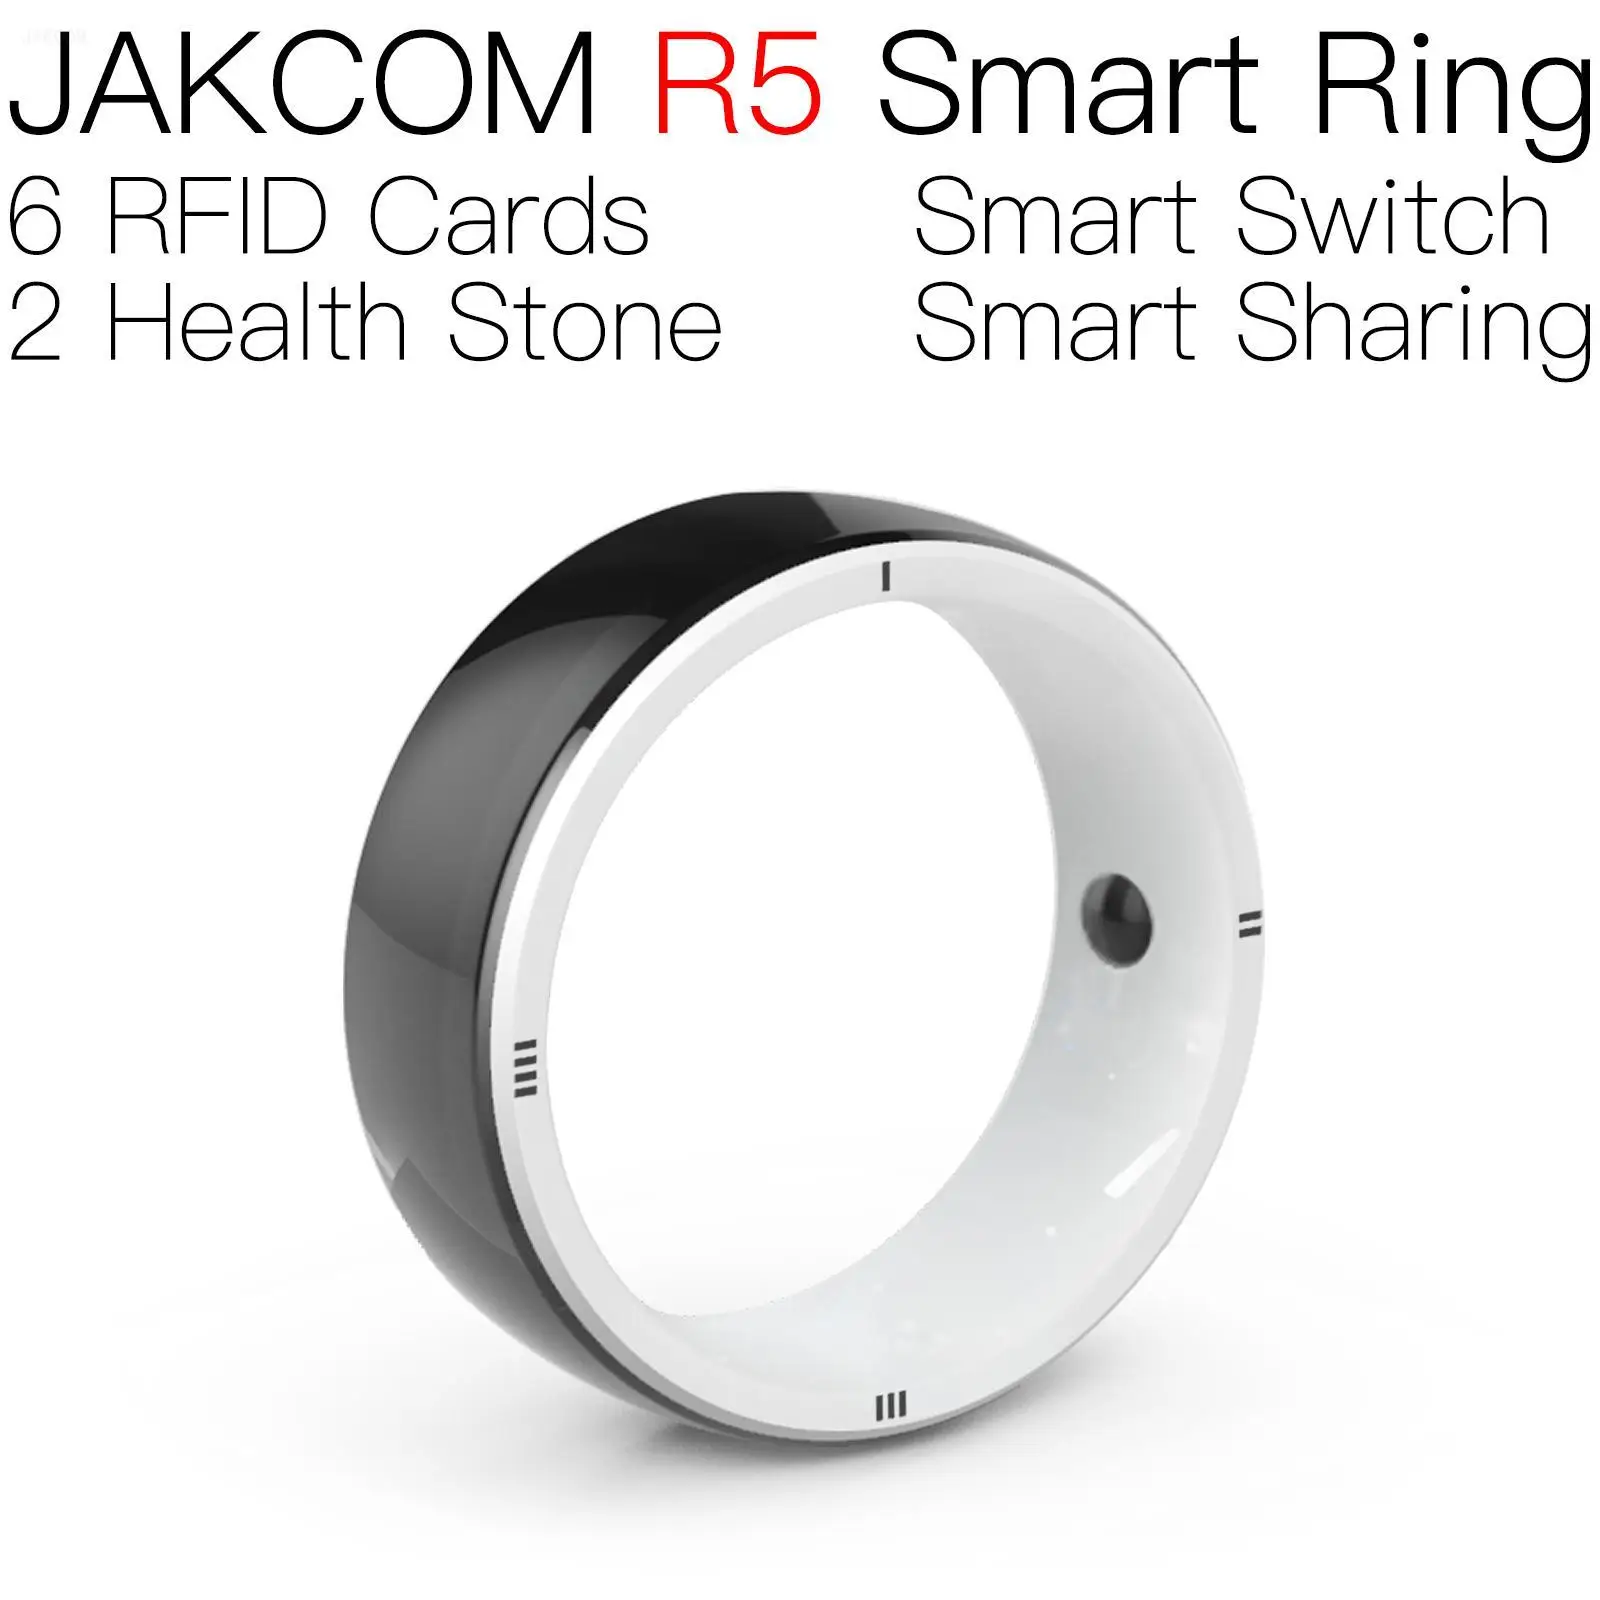 

Умное кольцо JAKCOM R5, лучше, чем заготовки, uid deauther, Смарт-часы, защитная бирка r4, кольцо jakcom, новинка